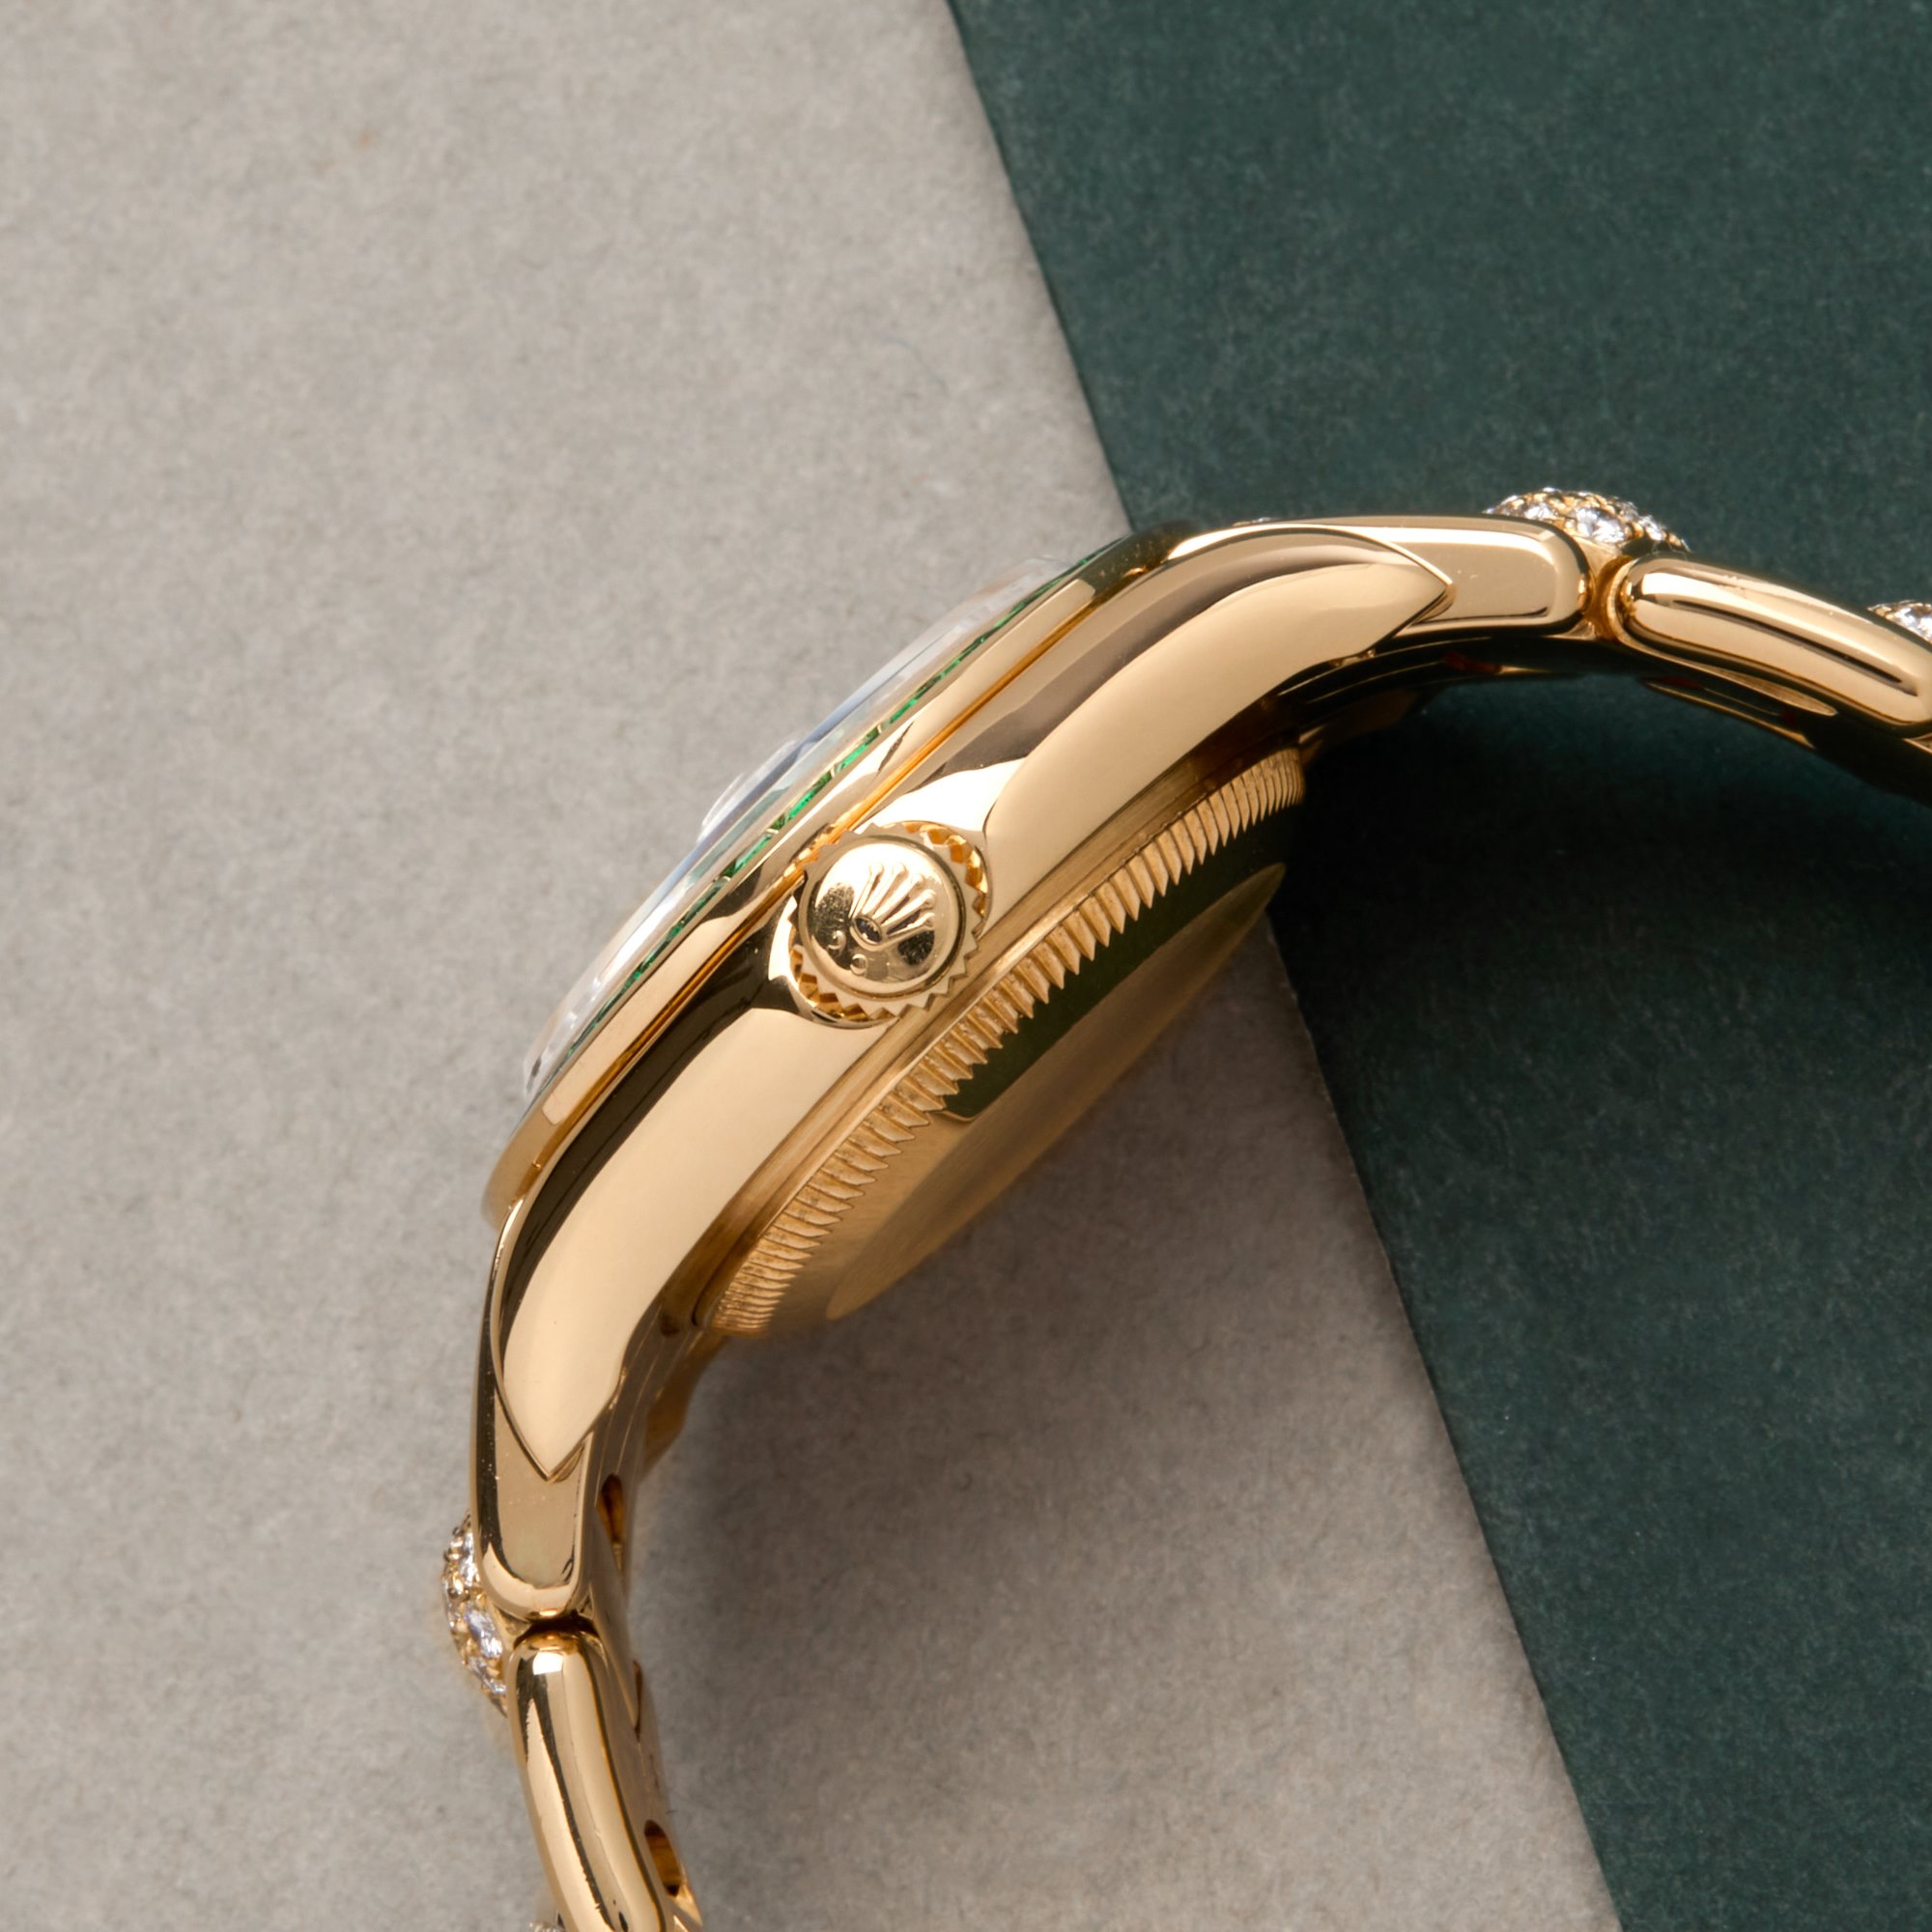 Rolex Datejust 29 Mother Of Pearl Emerald Masterpiece 18K Geel Goud 69308